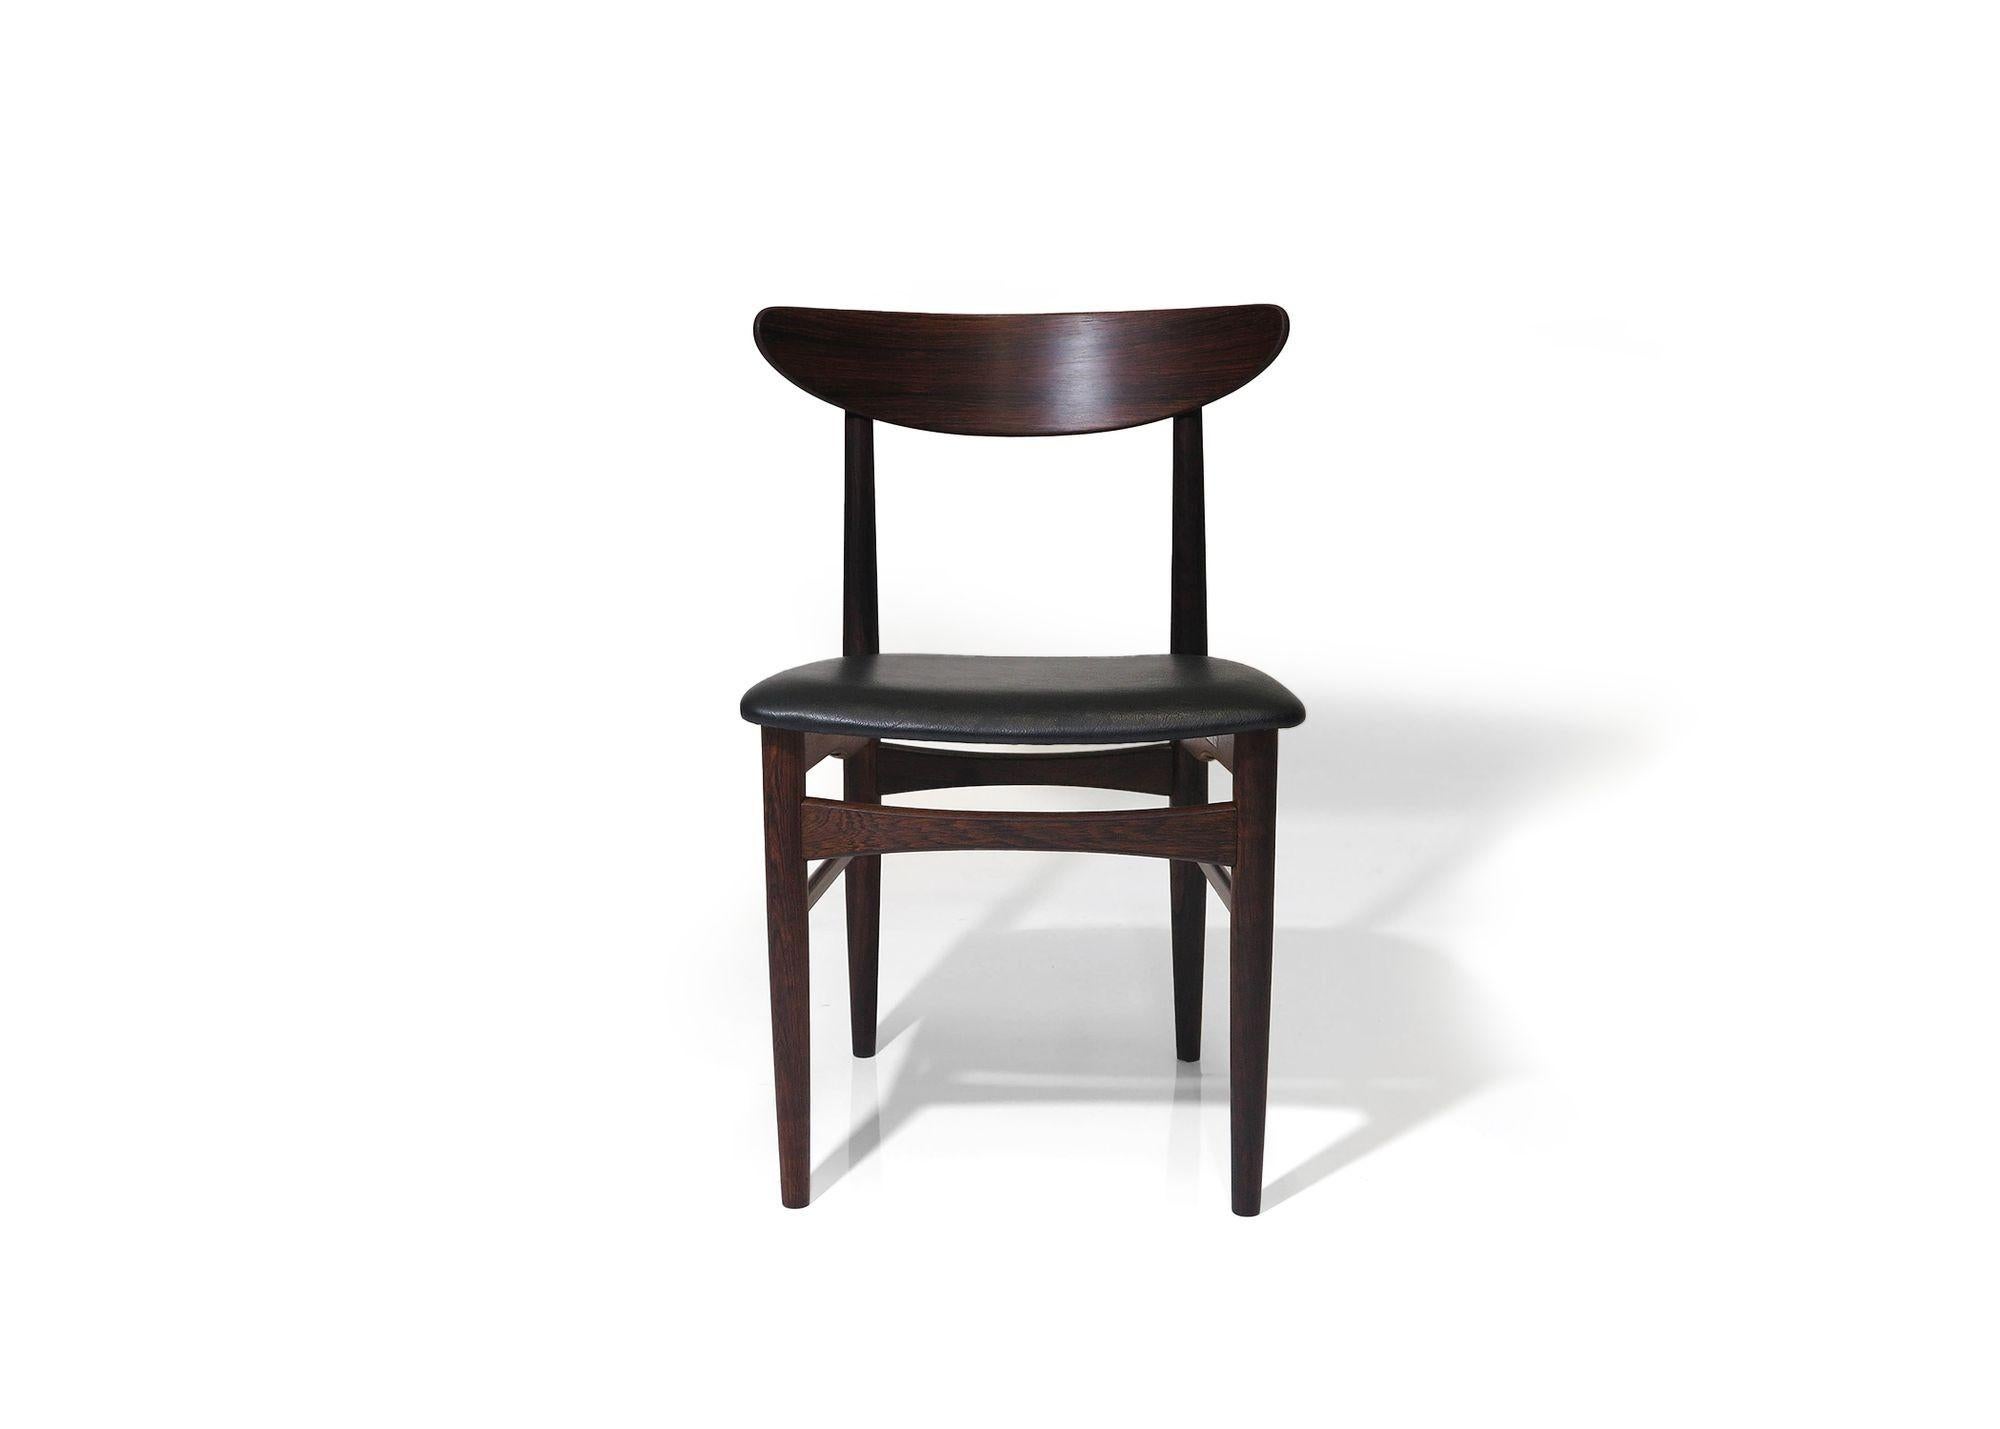 Ensemble de huit chaises de salle à manger en bois de rose du milieu du siècle, conçues par E.W Bach pour Skovby Moblefabrik, modèle 57. Les chaises sont fabriquées en bois de rose brésilien massif et revêtues de cuir noir vintage.
Dimensions : L